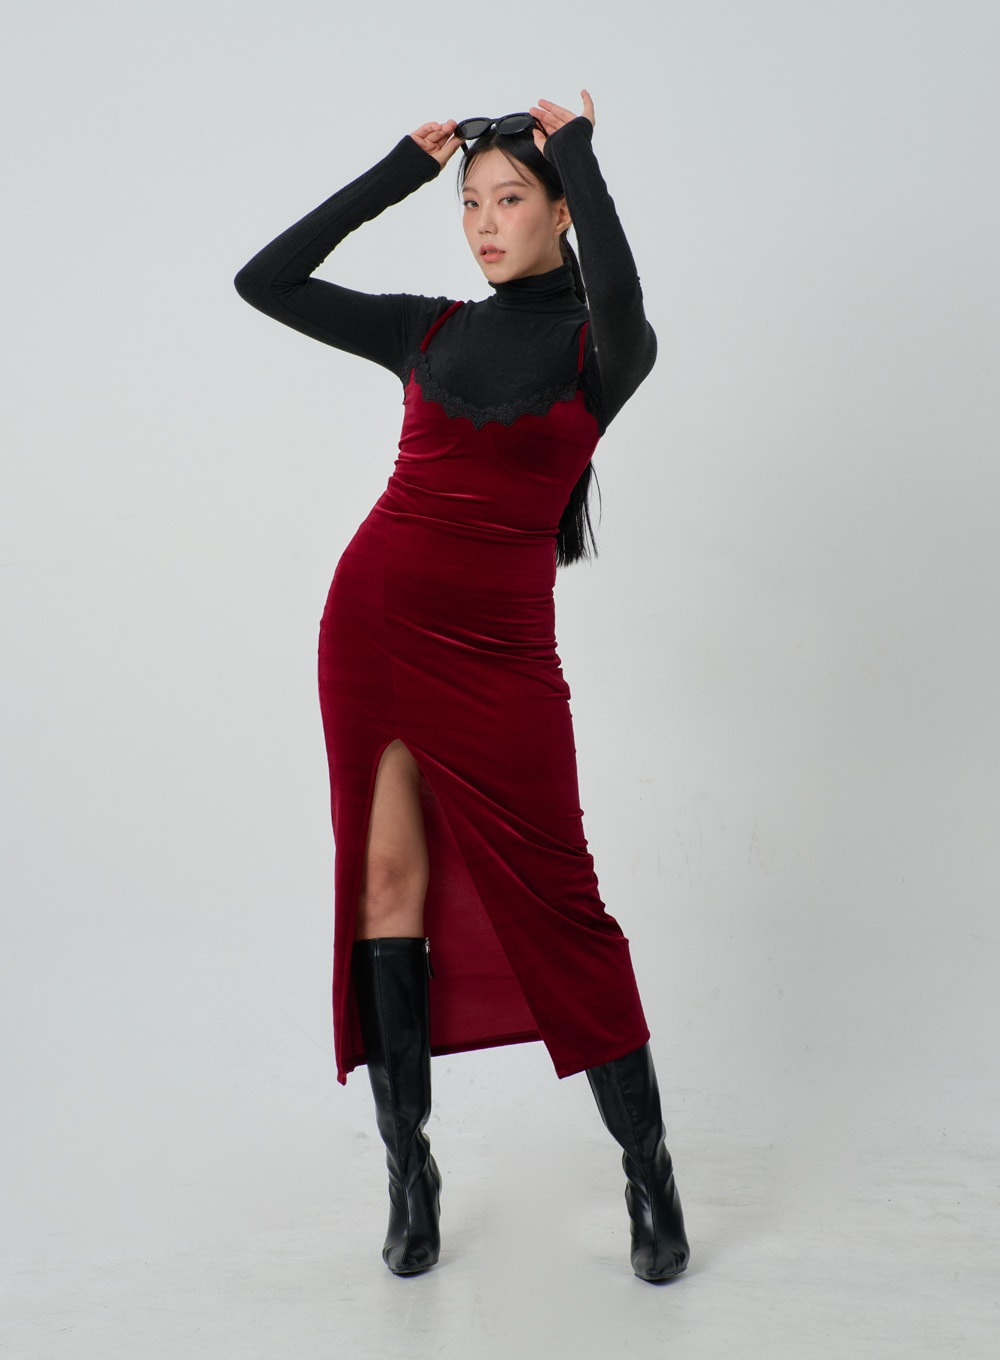 Velvet Lingerie Style Thin Strap Maxi Dress IJ319